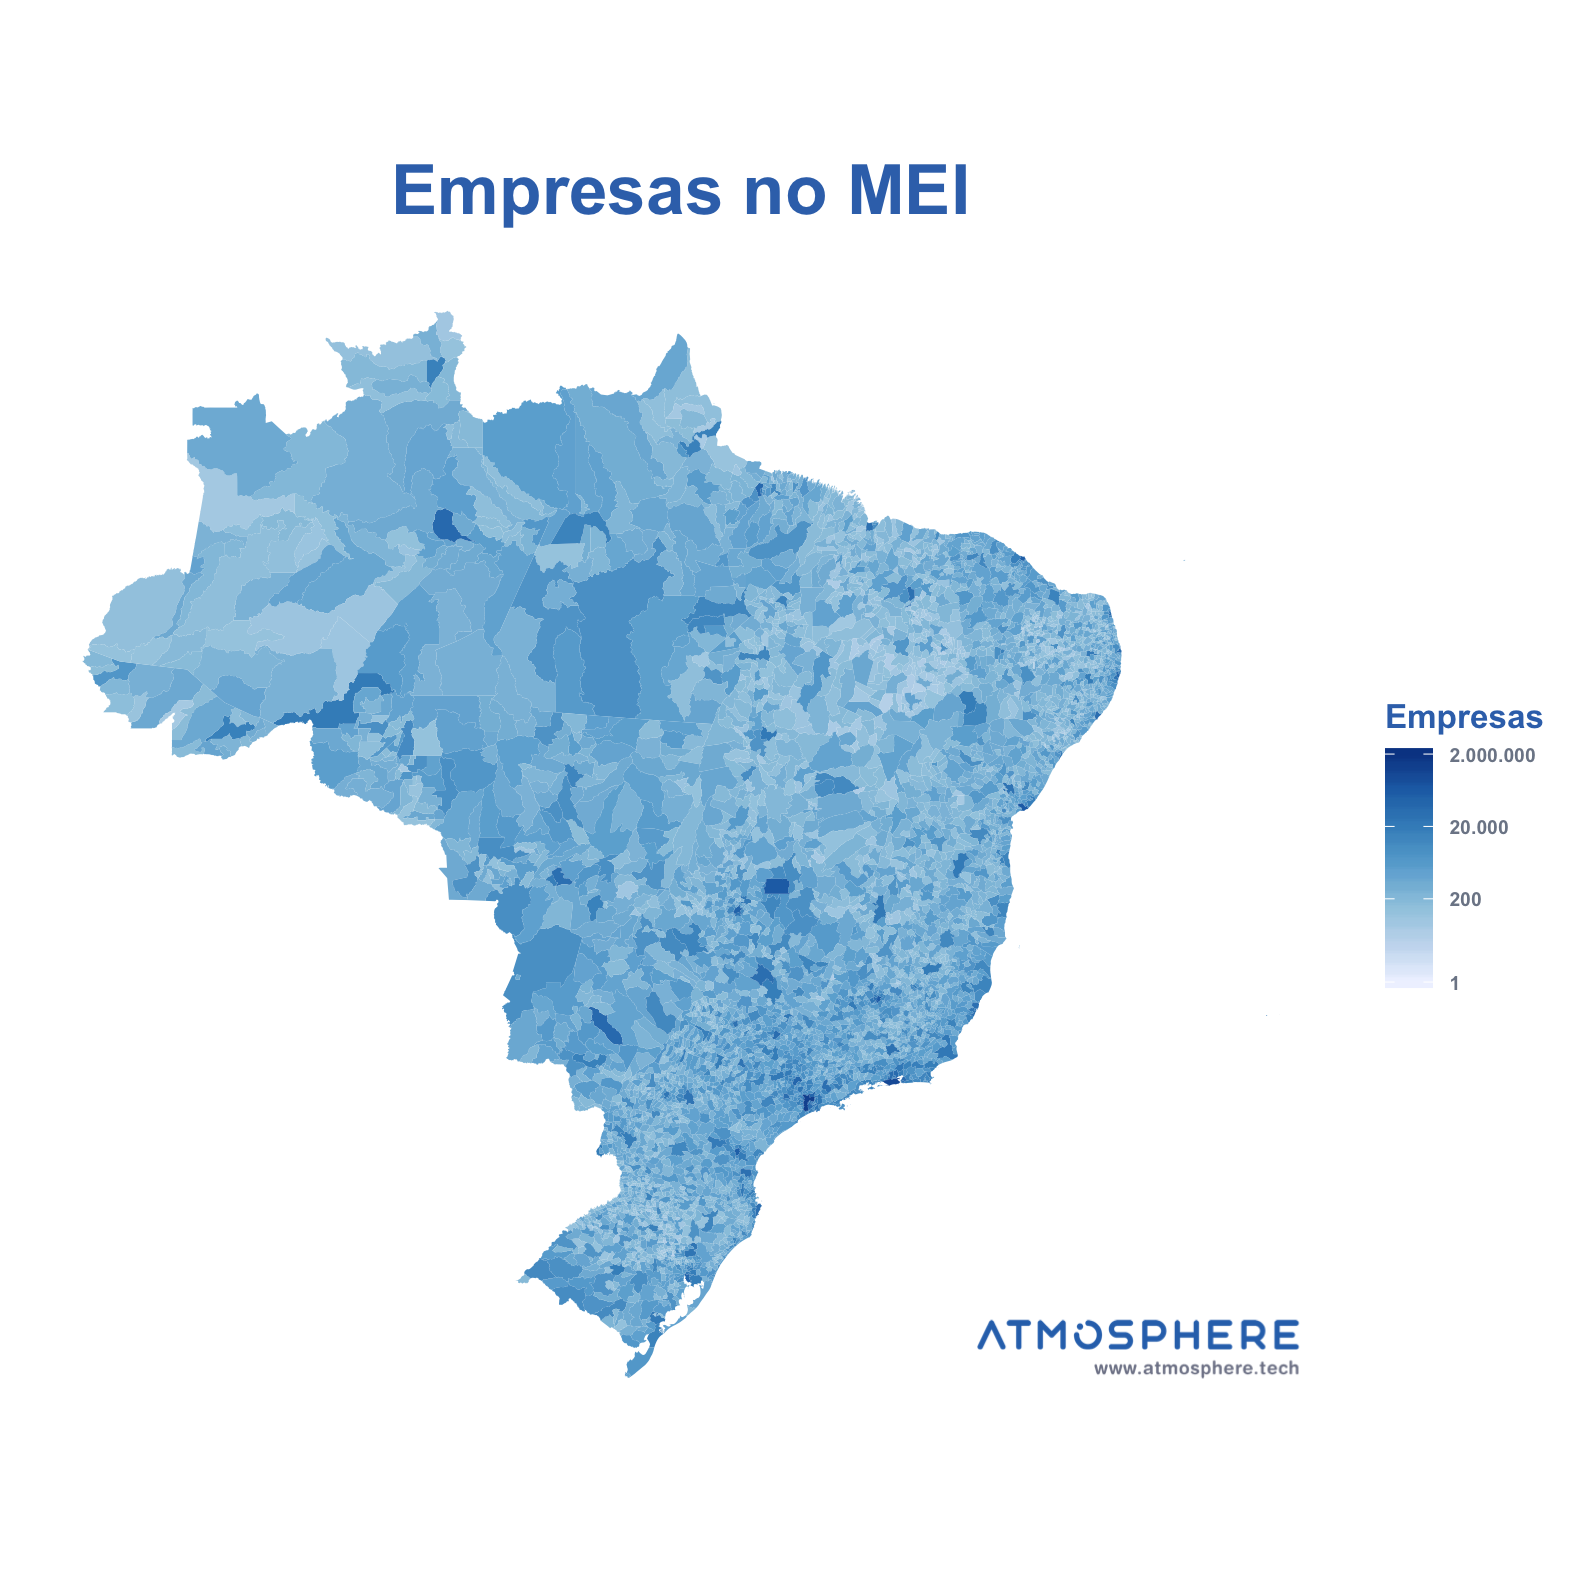 Oportunidados Empresas no MEI por Município no Brasil